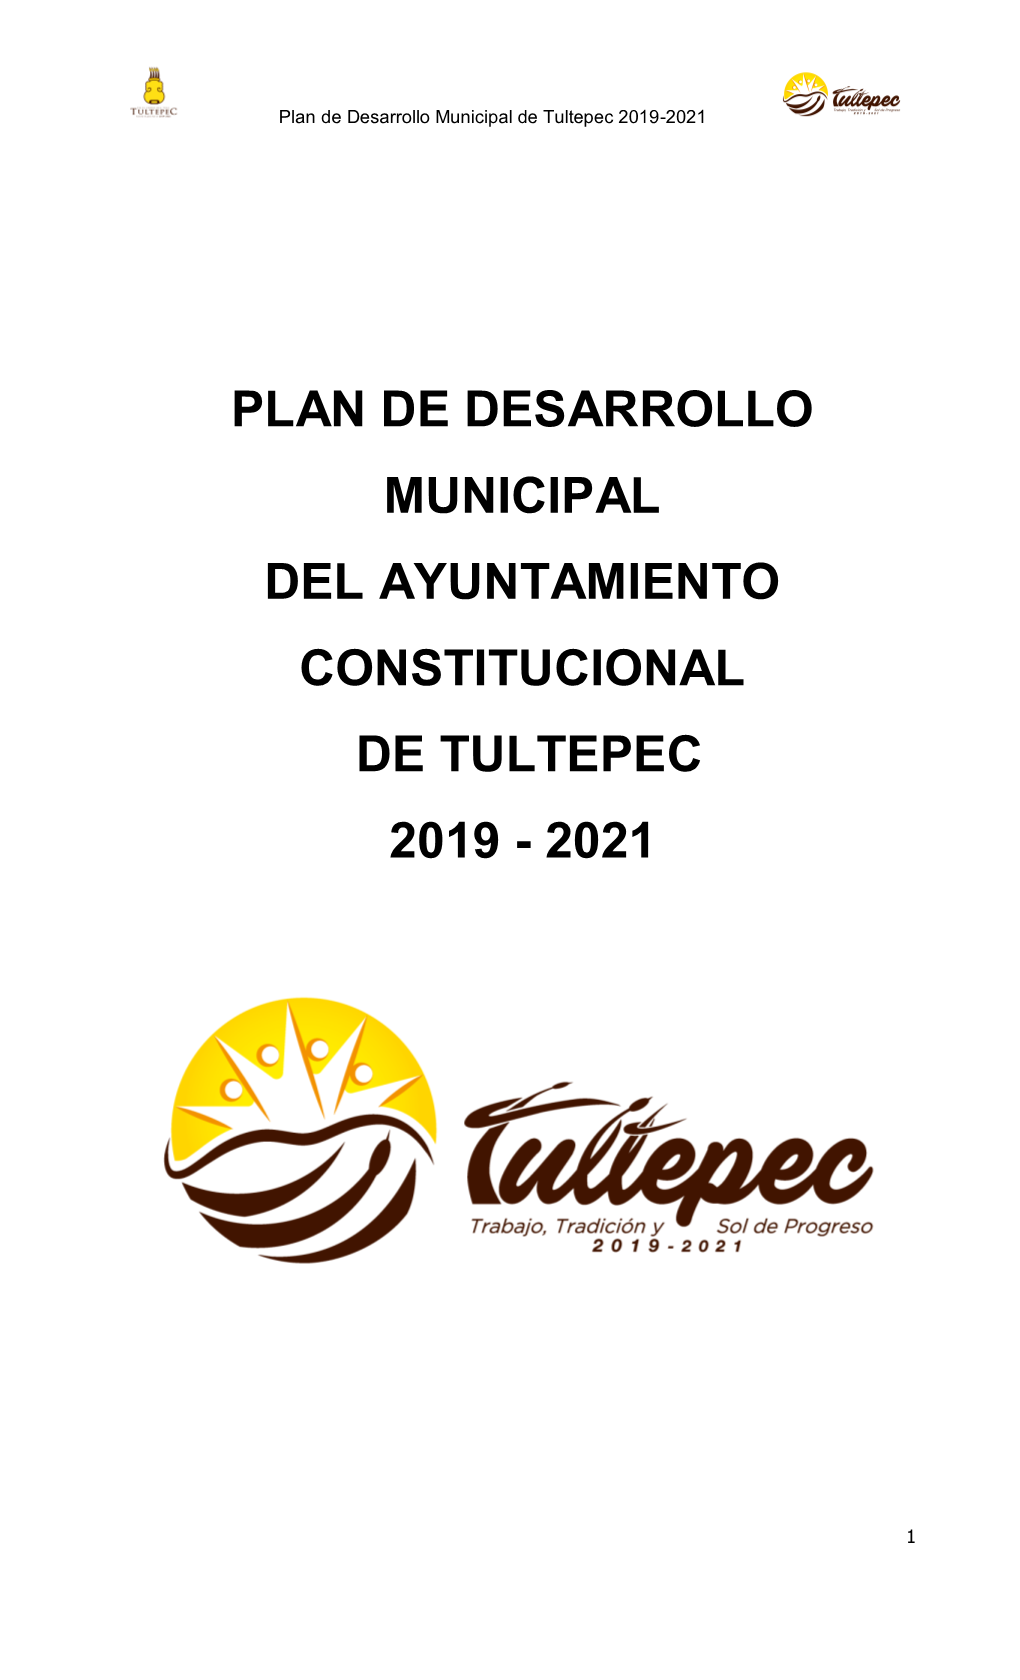 Plan De Desarrollo Municipal Del Ayuntamiento Constitucional De Tultepec 2019 - 2021